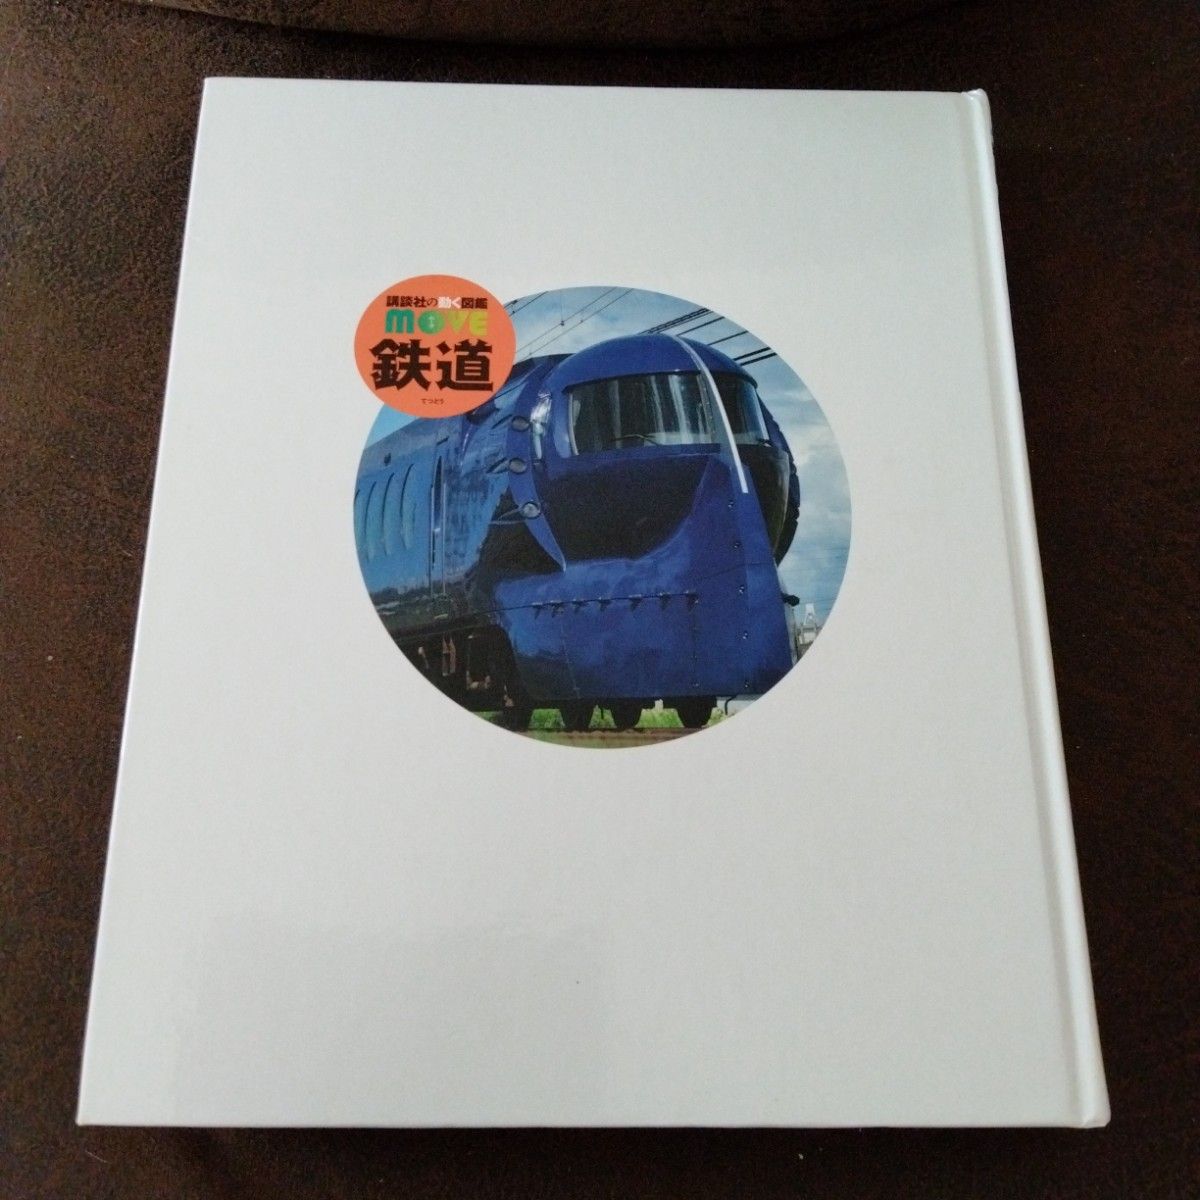 講談社の動く図鑑　MOVE　ムーブ　鉄道　DVD付き(訳あり)